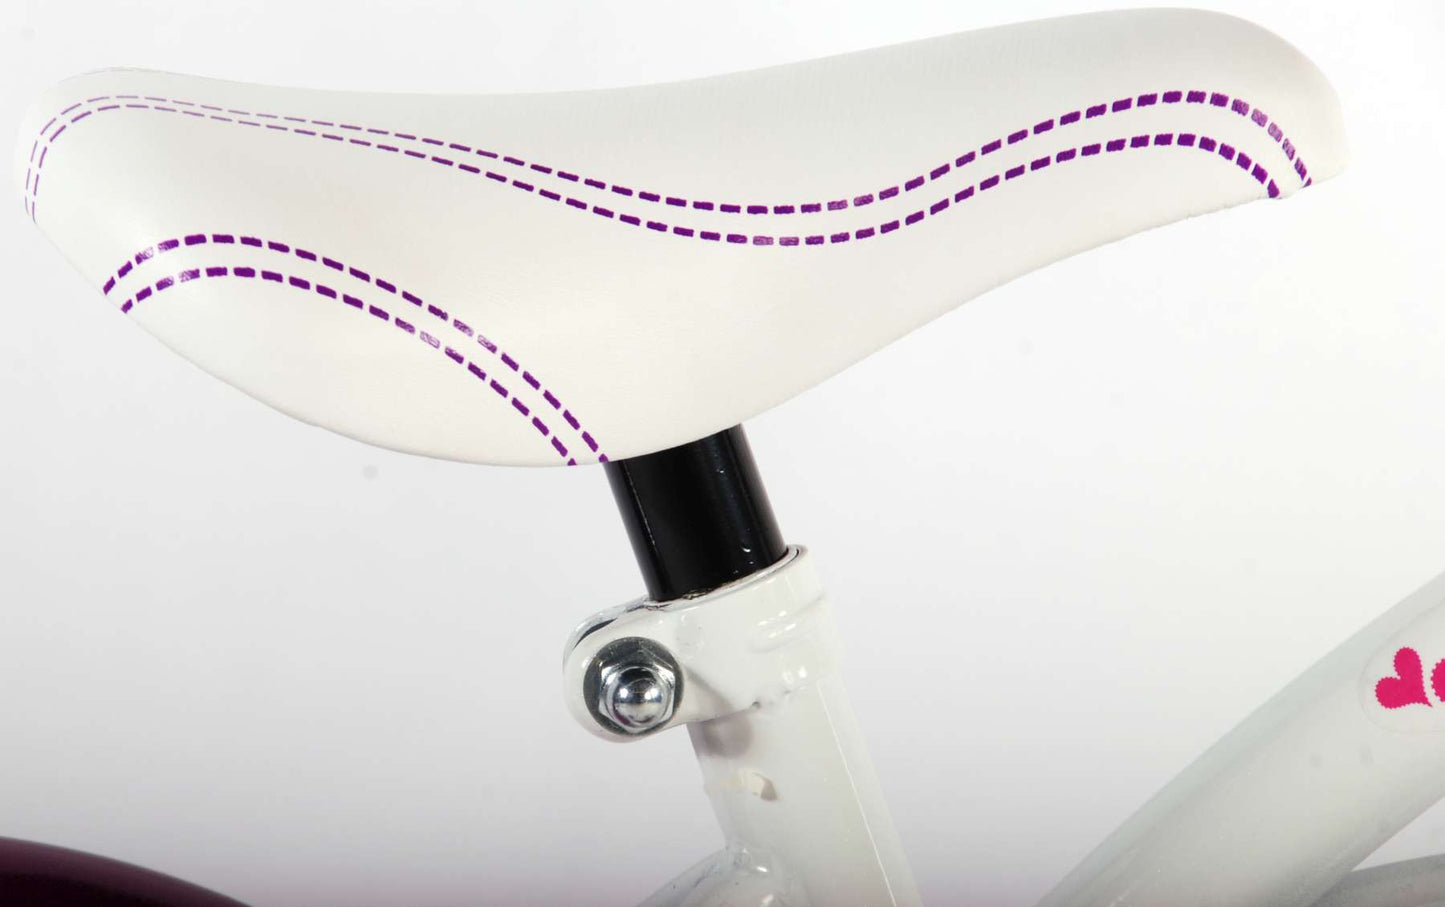 Volare Heart Cruiser Bike para niños - Niñas - 12 pulgadas - Púrpura Blanca